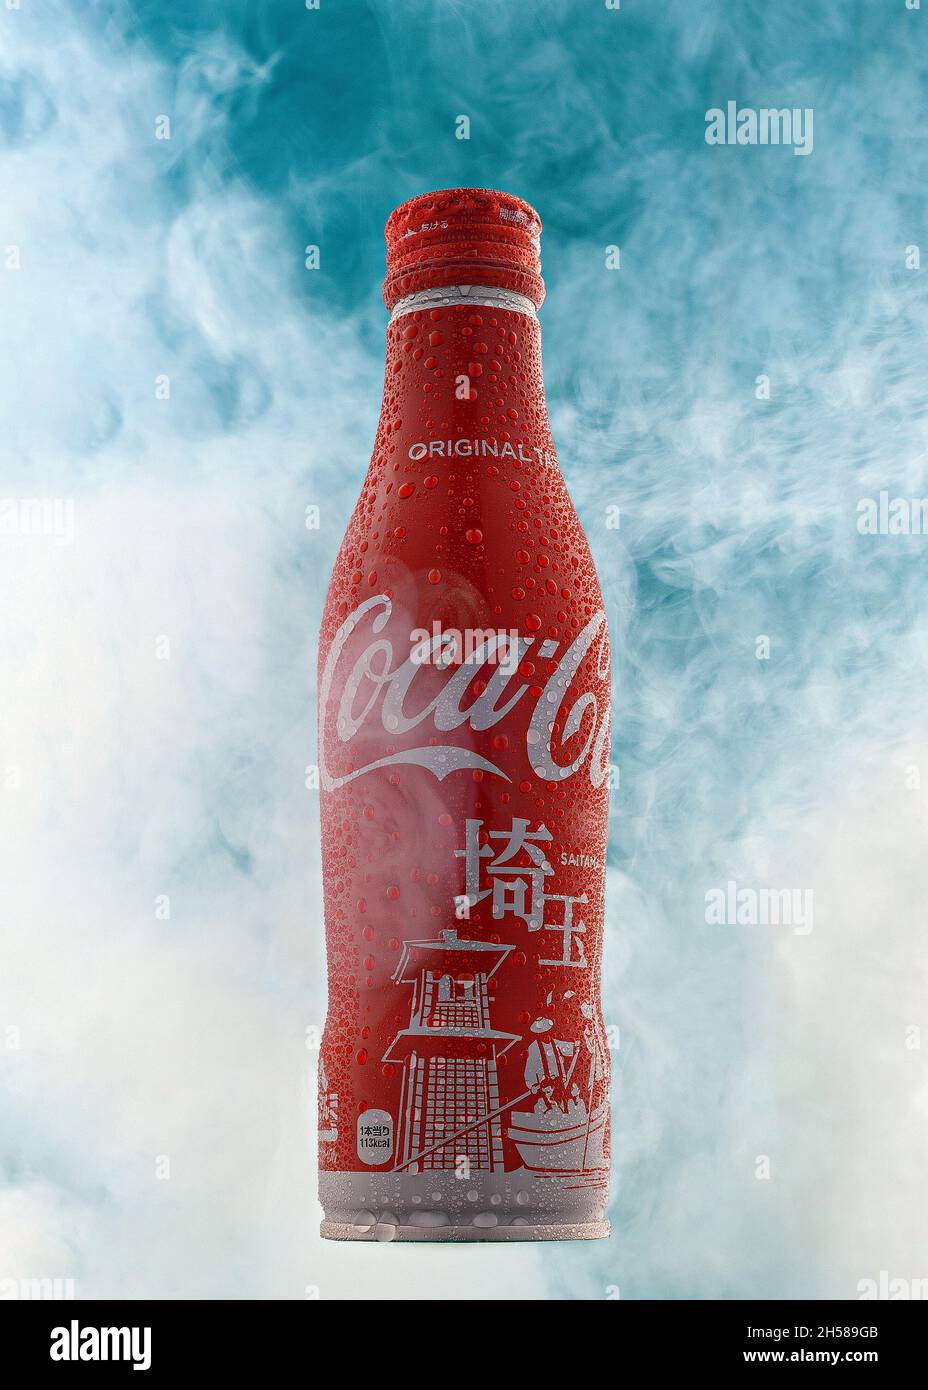 Redaktionelle Aufnahme einer japanischen Flasche von Coca Cola, die auf einer vertikalen, von Nebel umgebenen Flasche mit Wassertropfen auf der Flasche gedreht wurde. Illustrative Einzelflasche Stockfoto